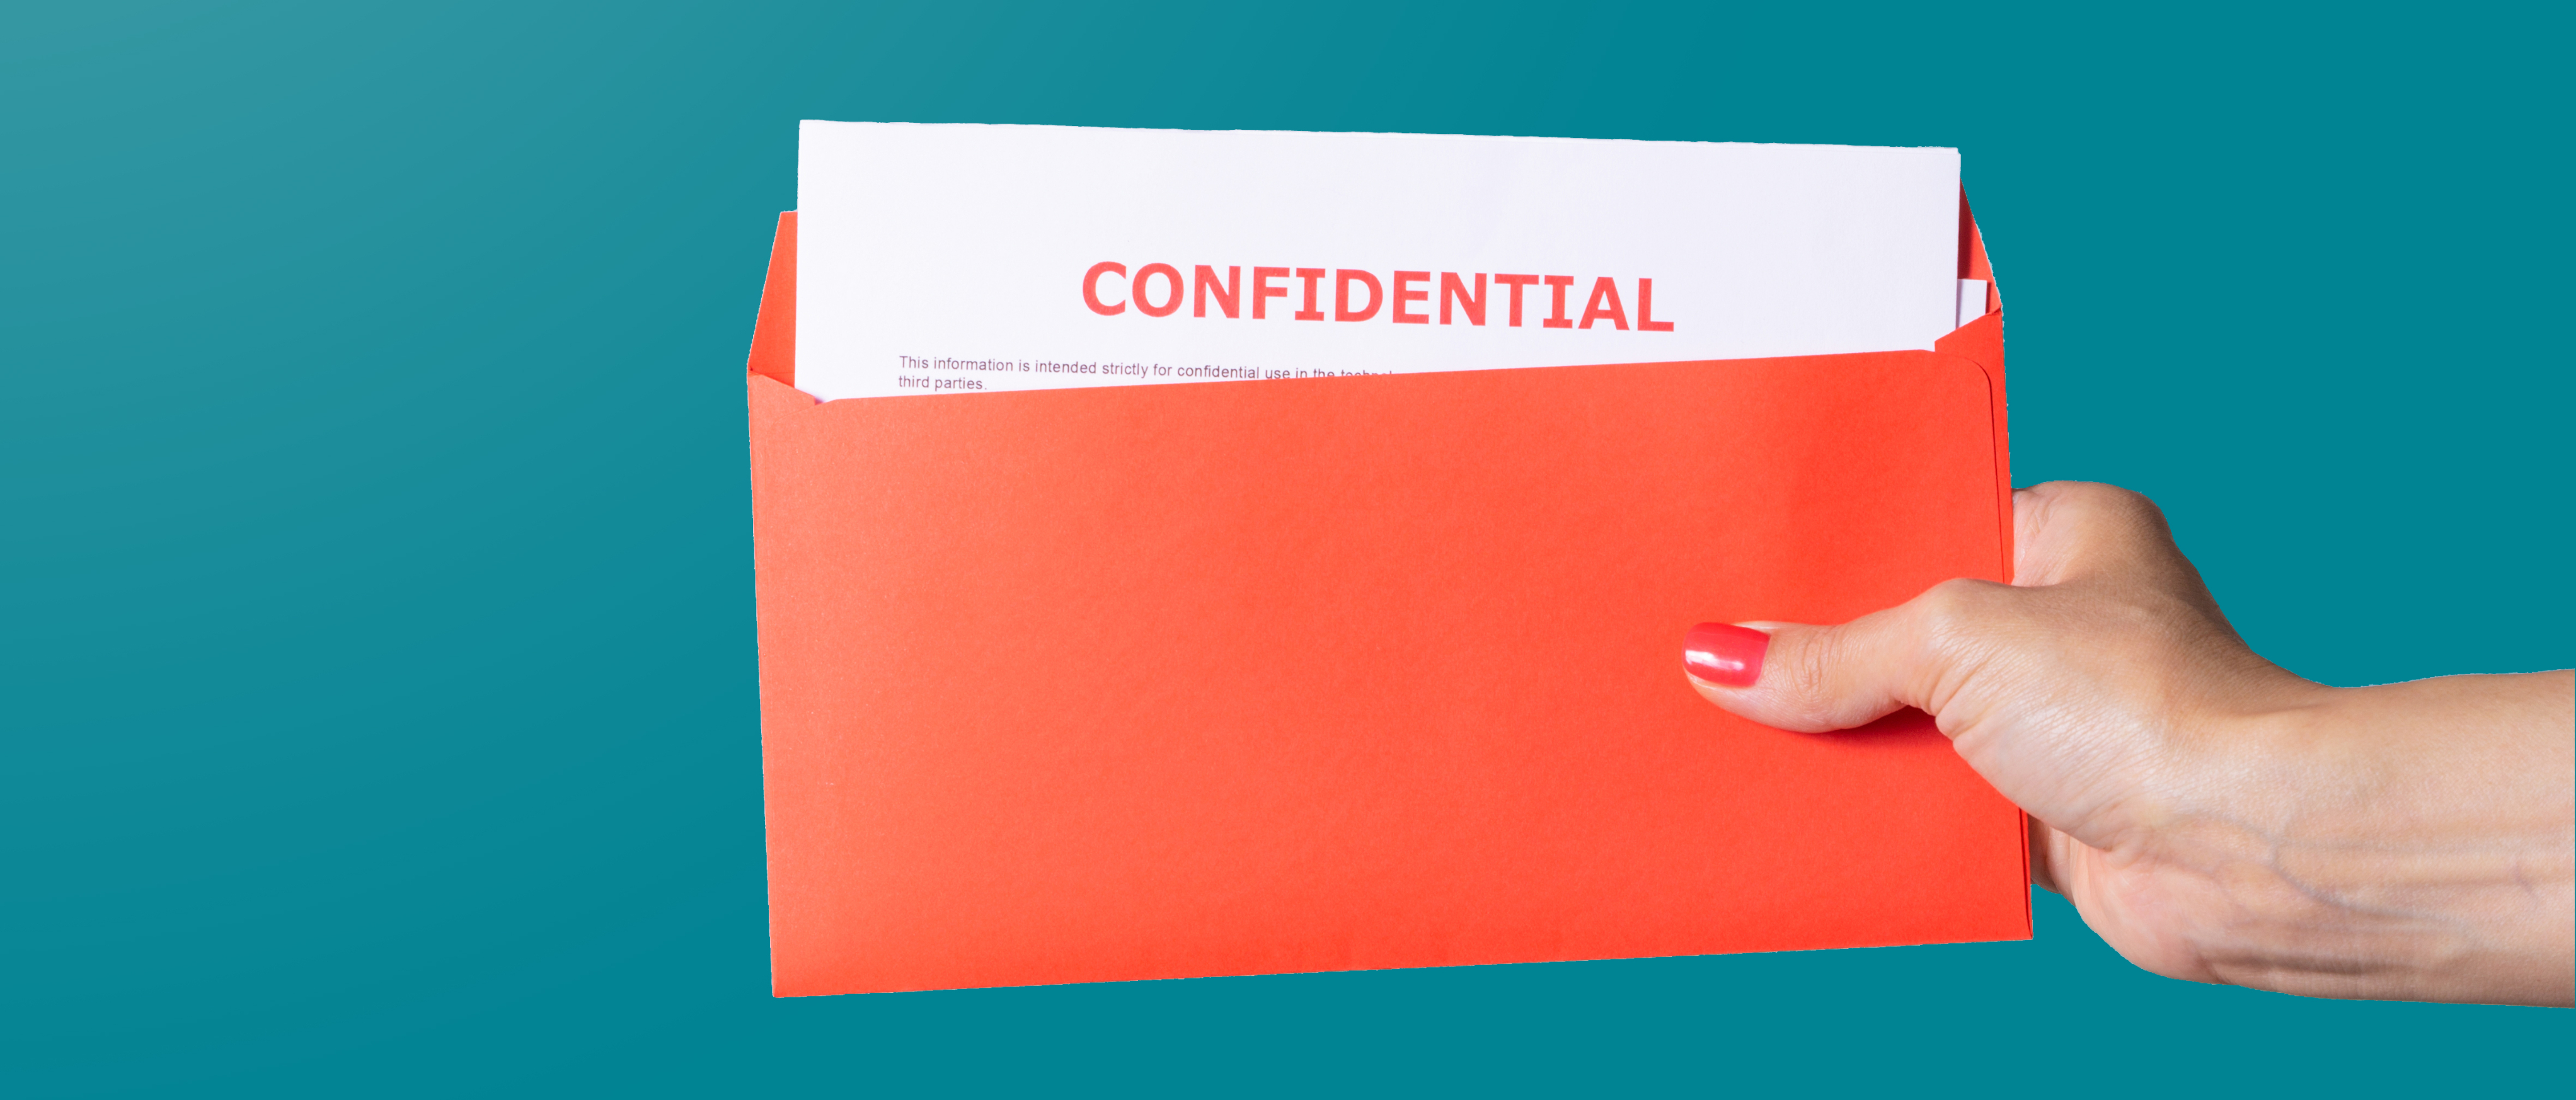 En hånd holder en korallfarget konvolutt med hvite dokumenter inni med ordene konfidensielle skrevet i rødt, alt mot en solid blågrønn bakgrunn